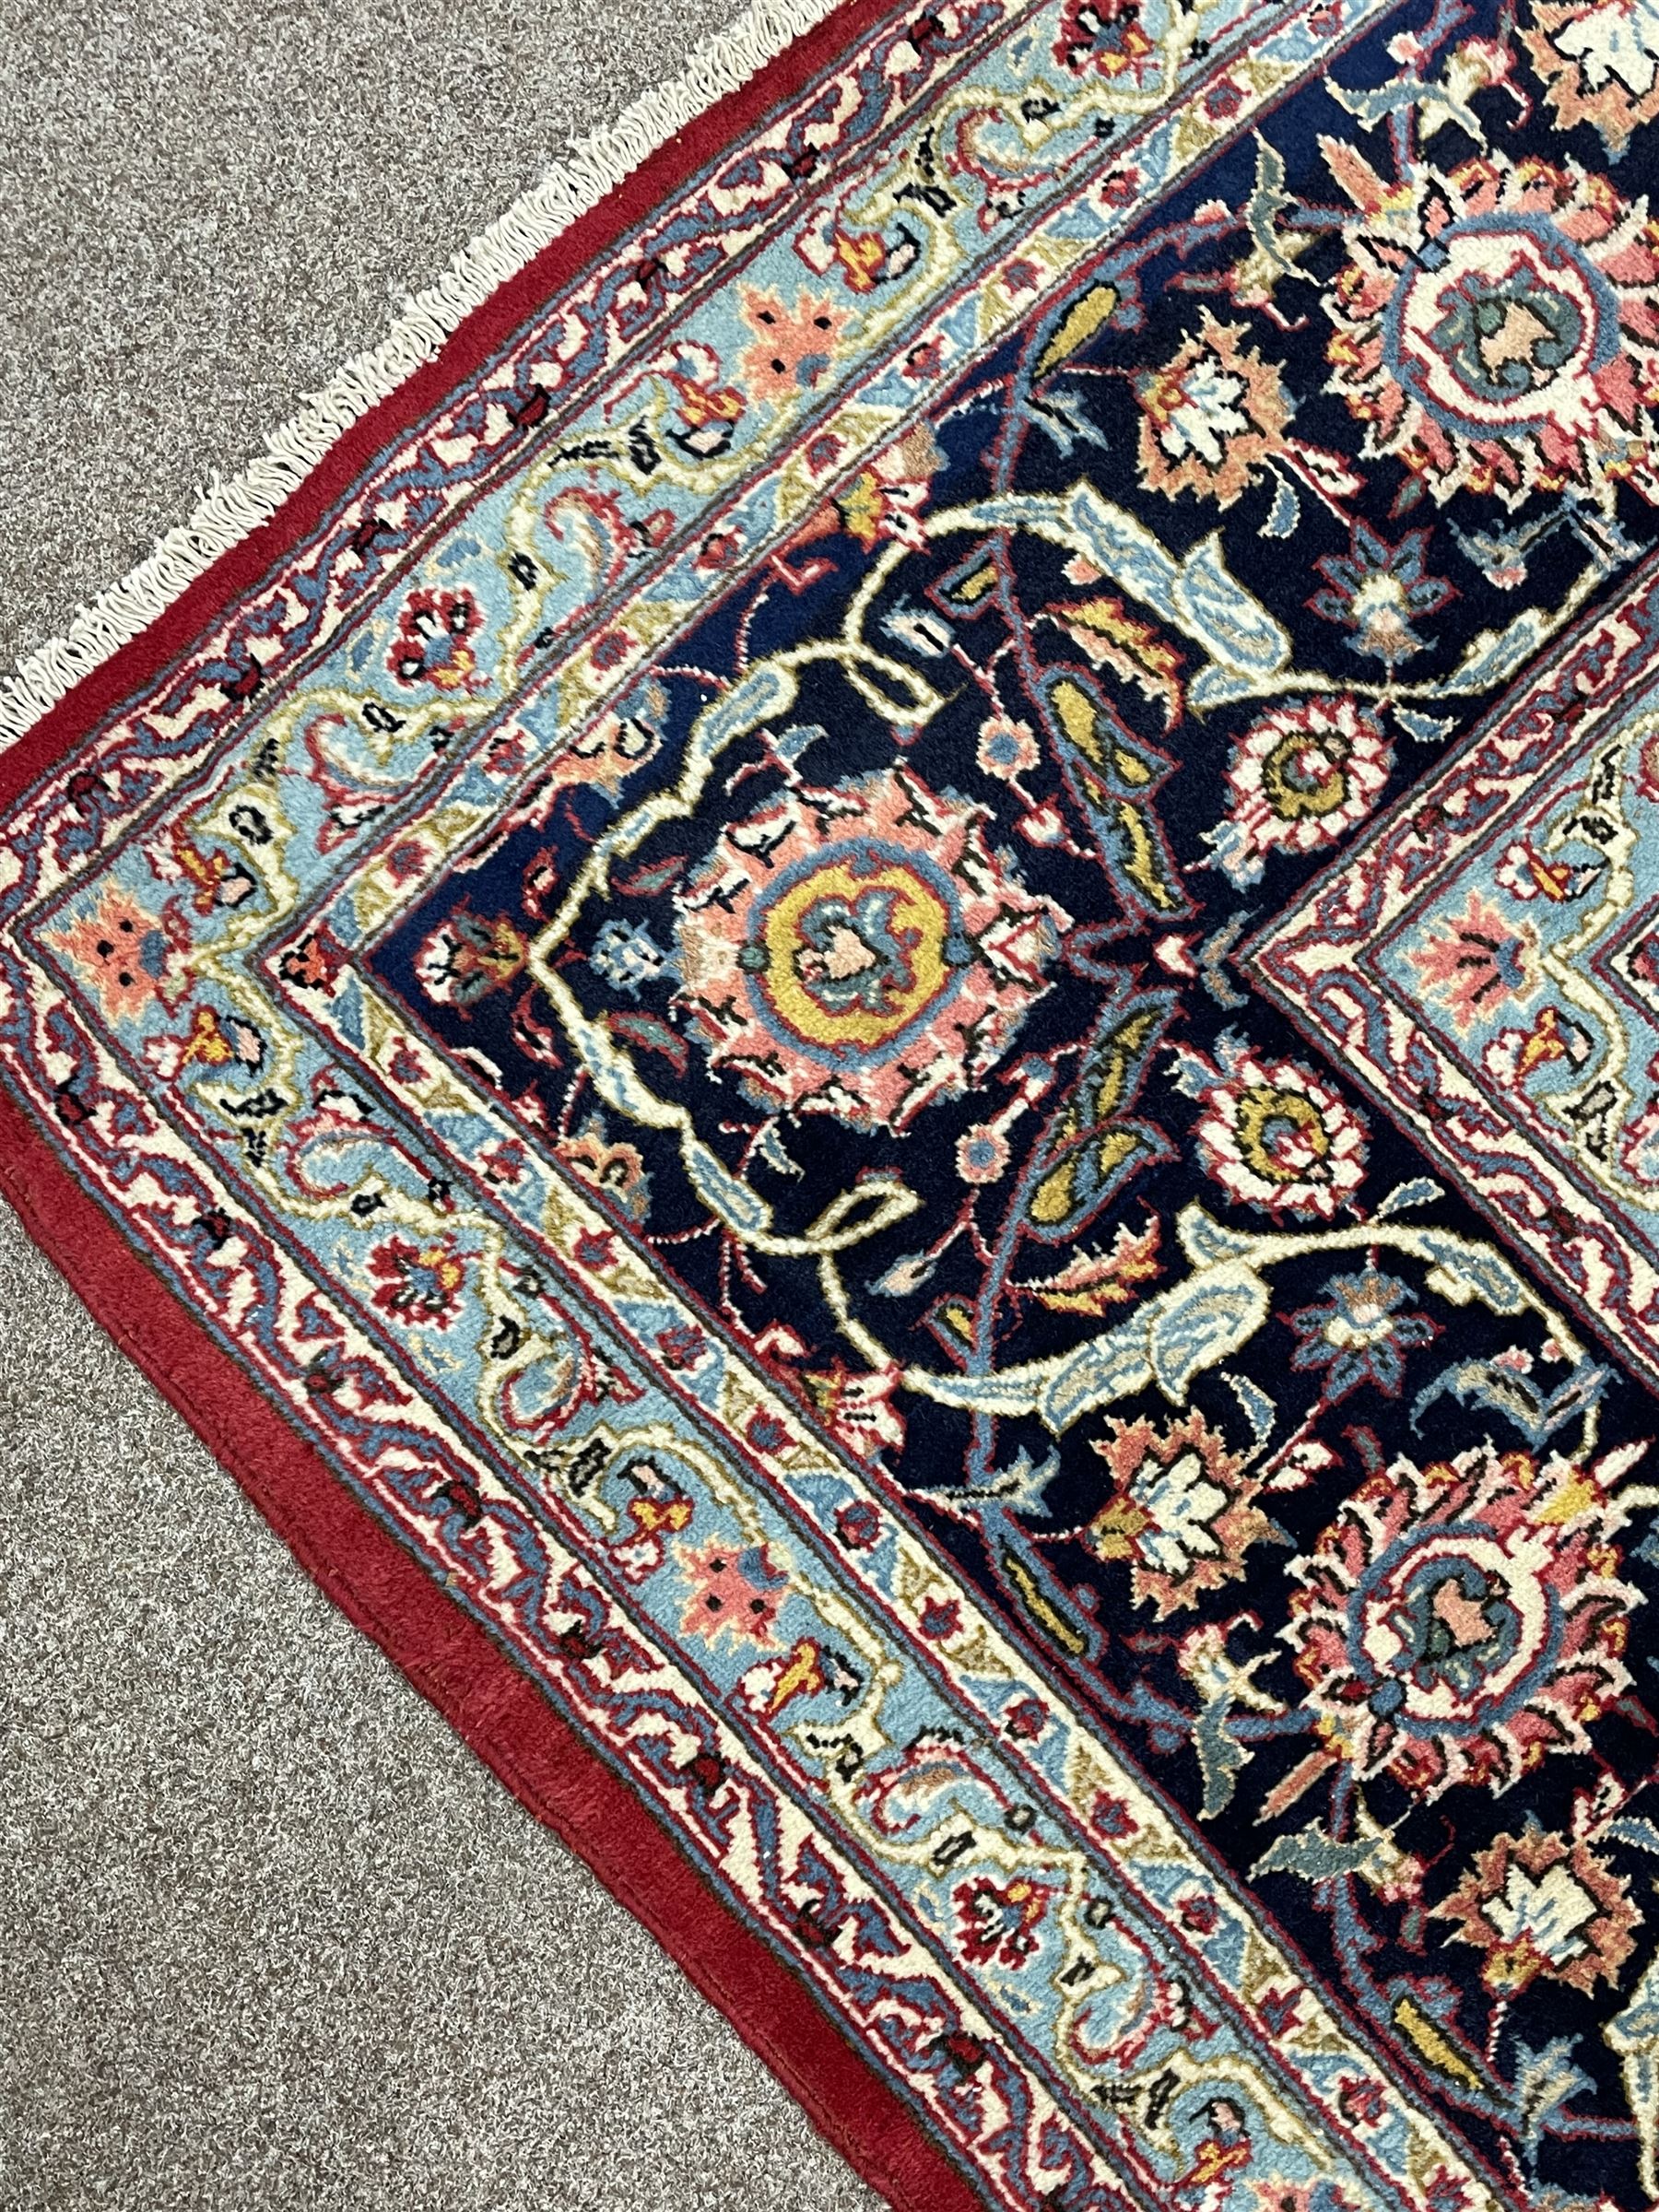 Large Persian Kashan carpet - Image 5 of 9